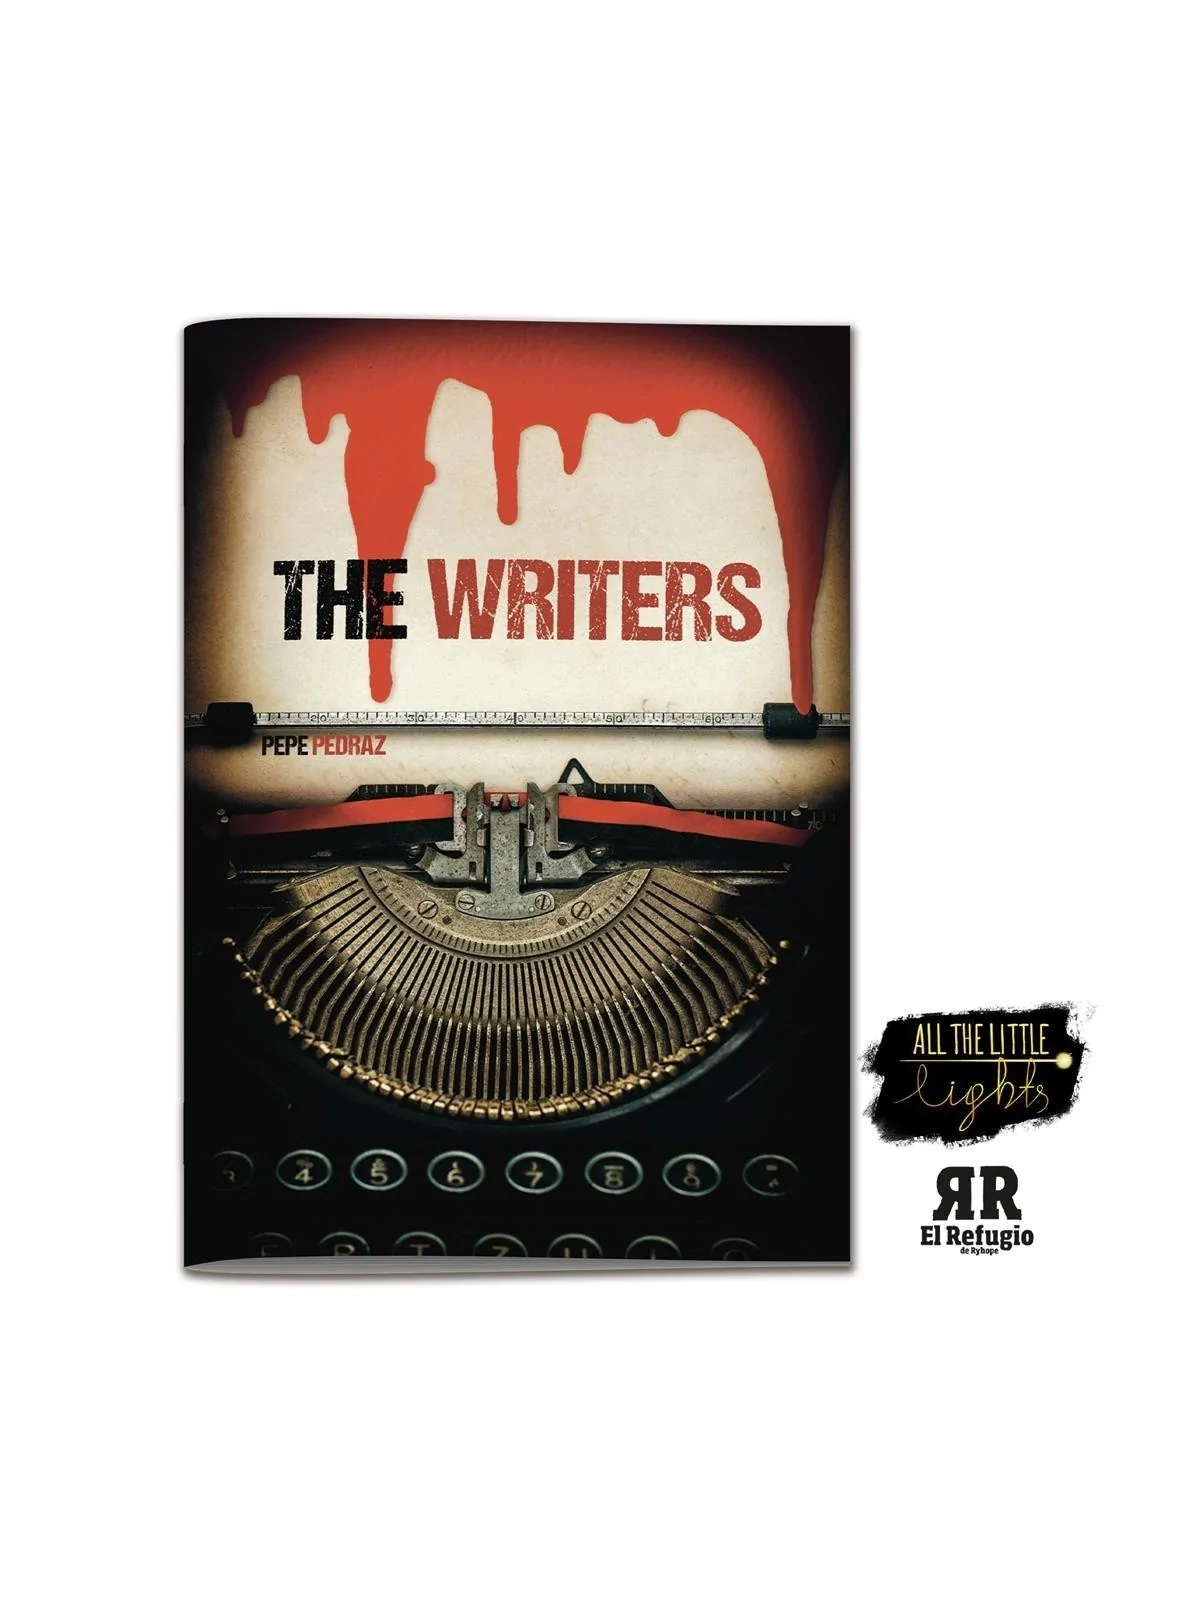 Comprar The Writers barato al mejor precio 12,25 € de El Refugio de Ry